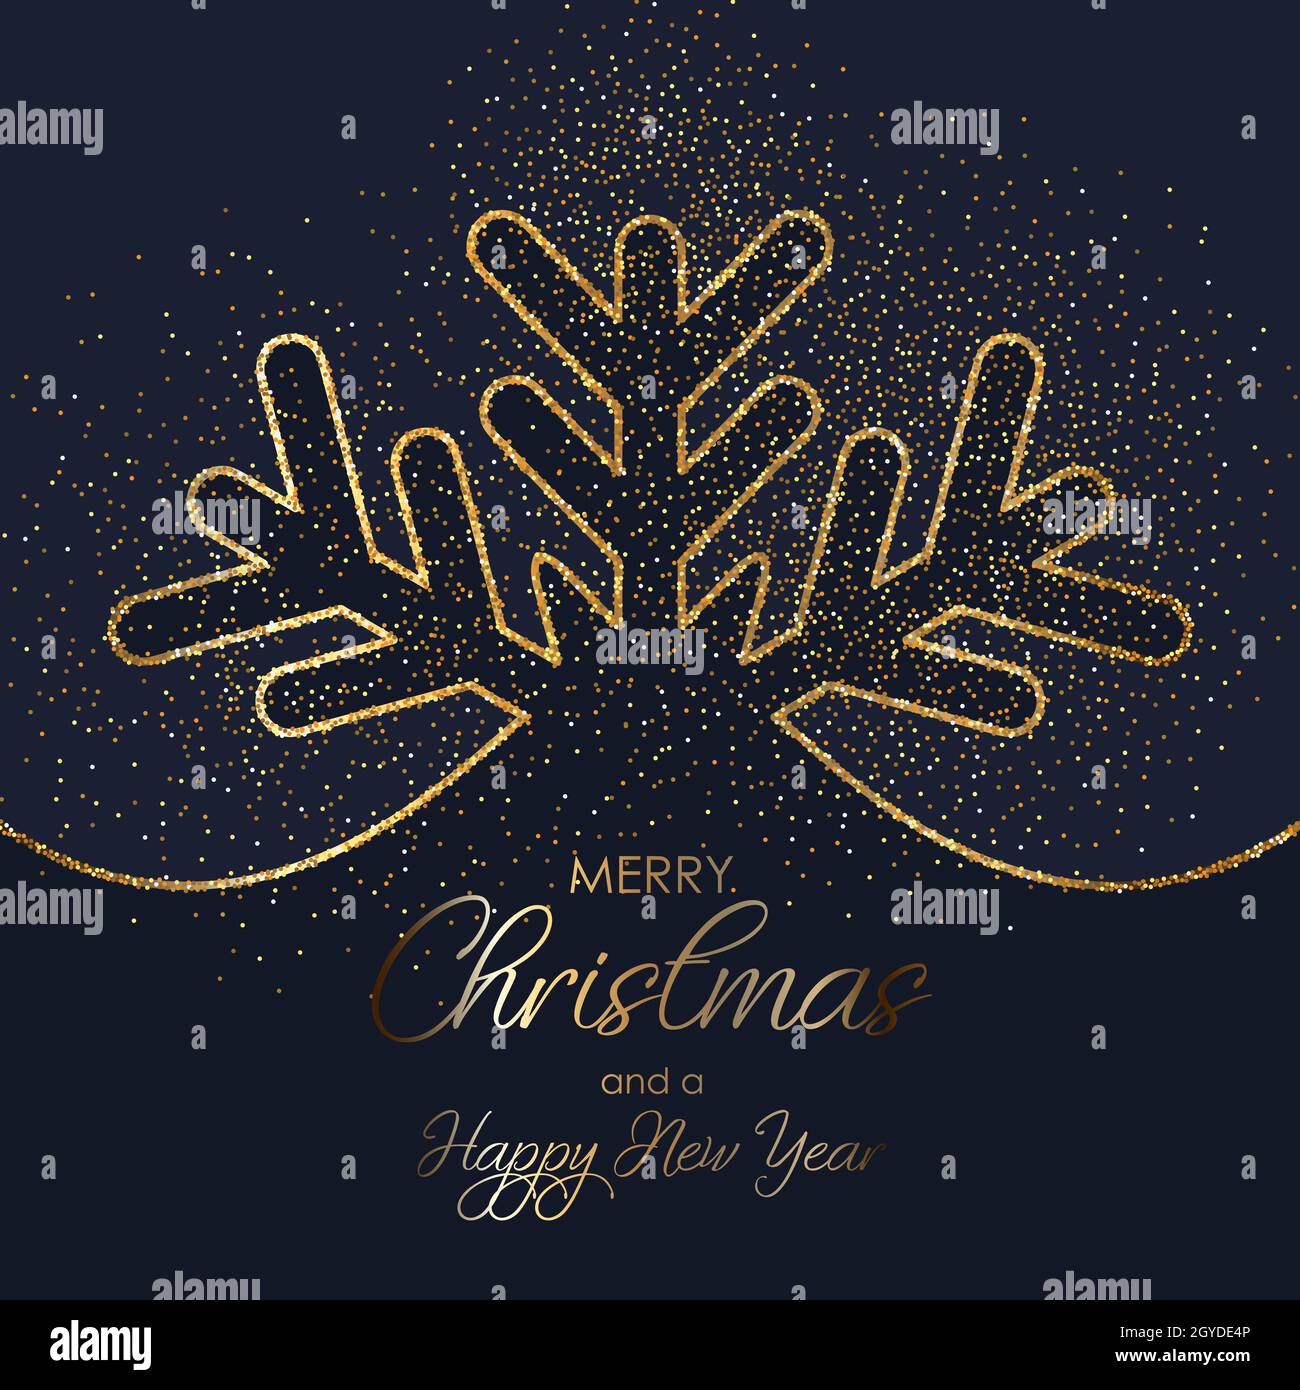 Fond de Noël orné d'un motif flocons de neige dorés scintillants Banque D'Images